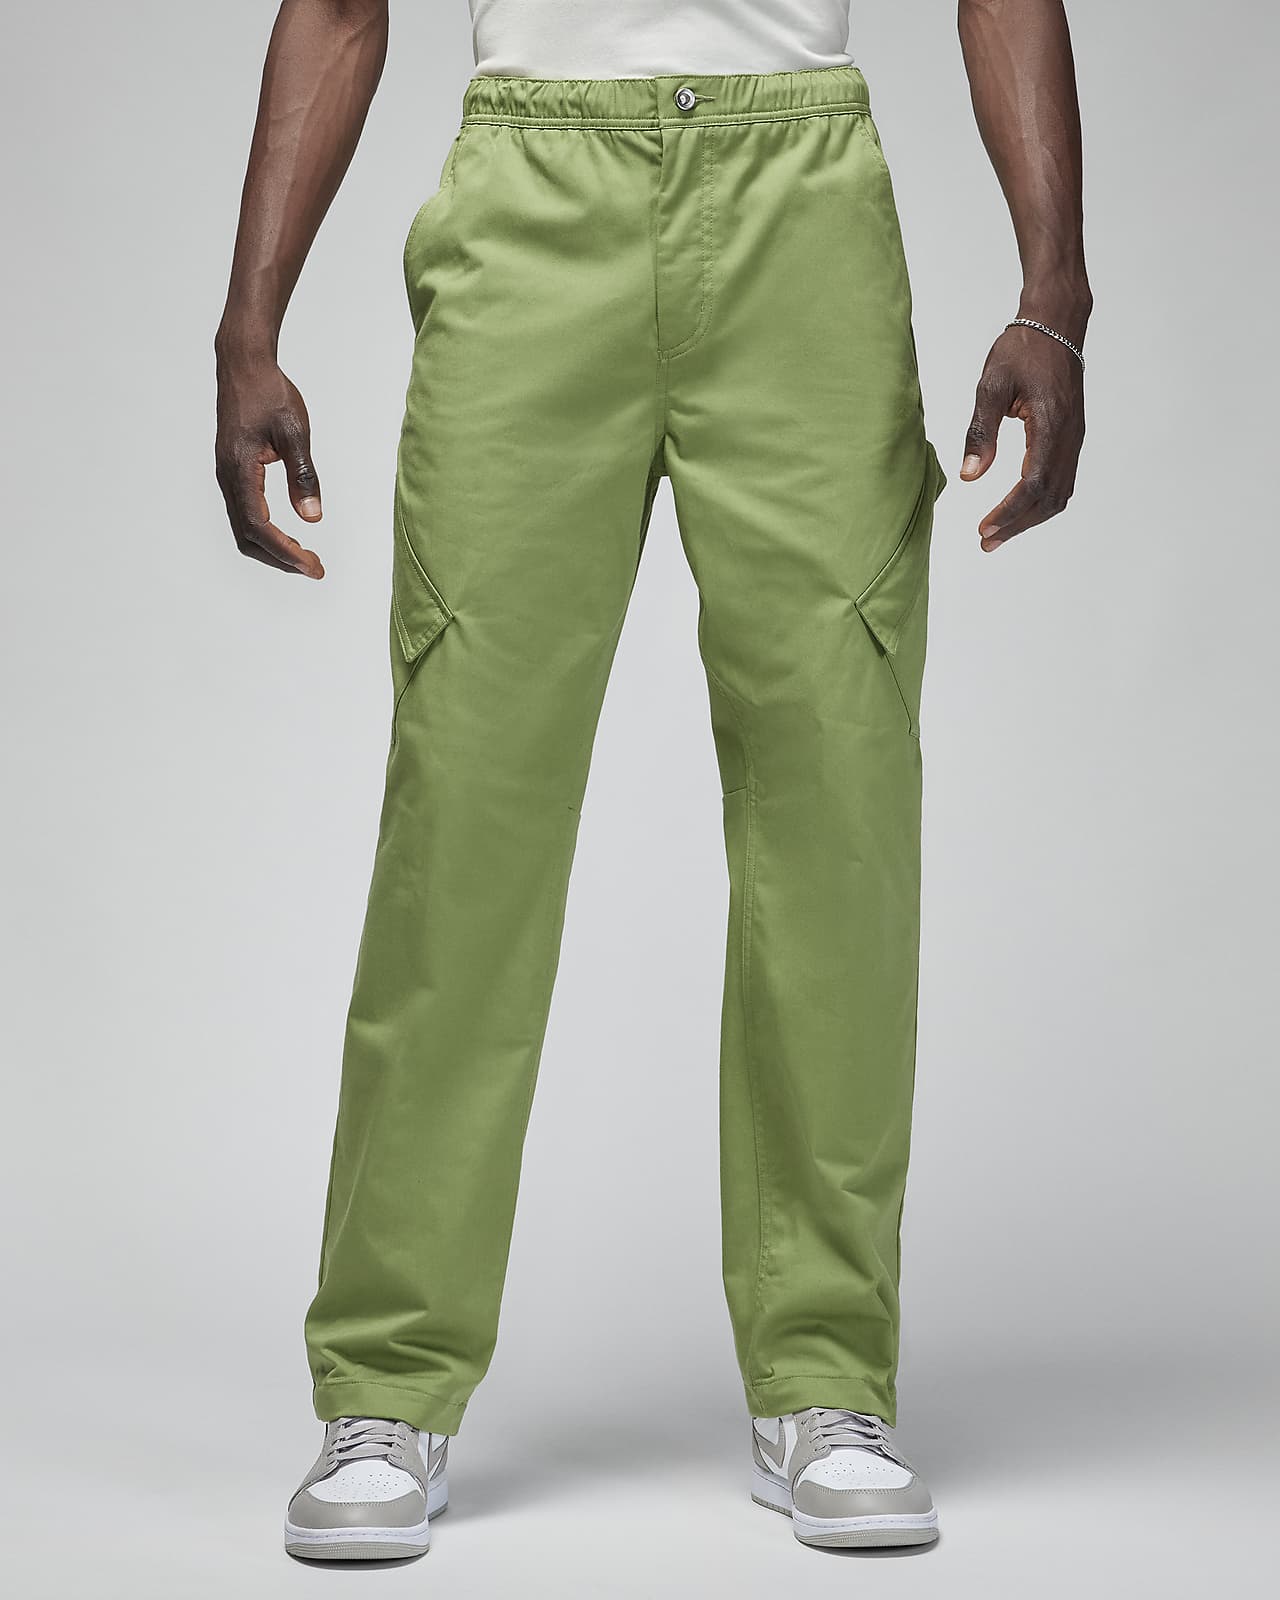 Pantaloni Jordan Essentials Chicago – Uomo